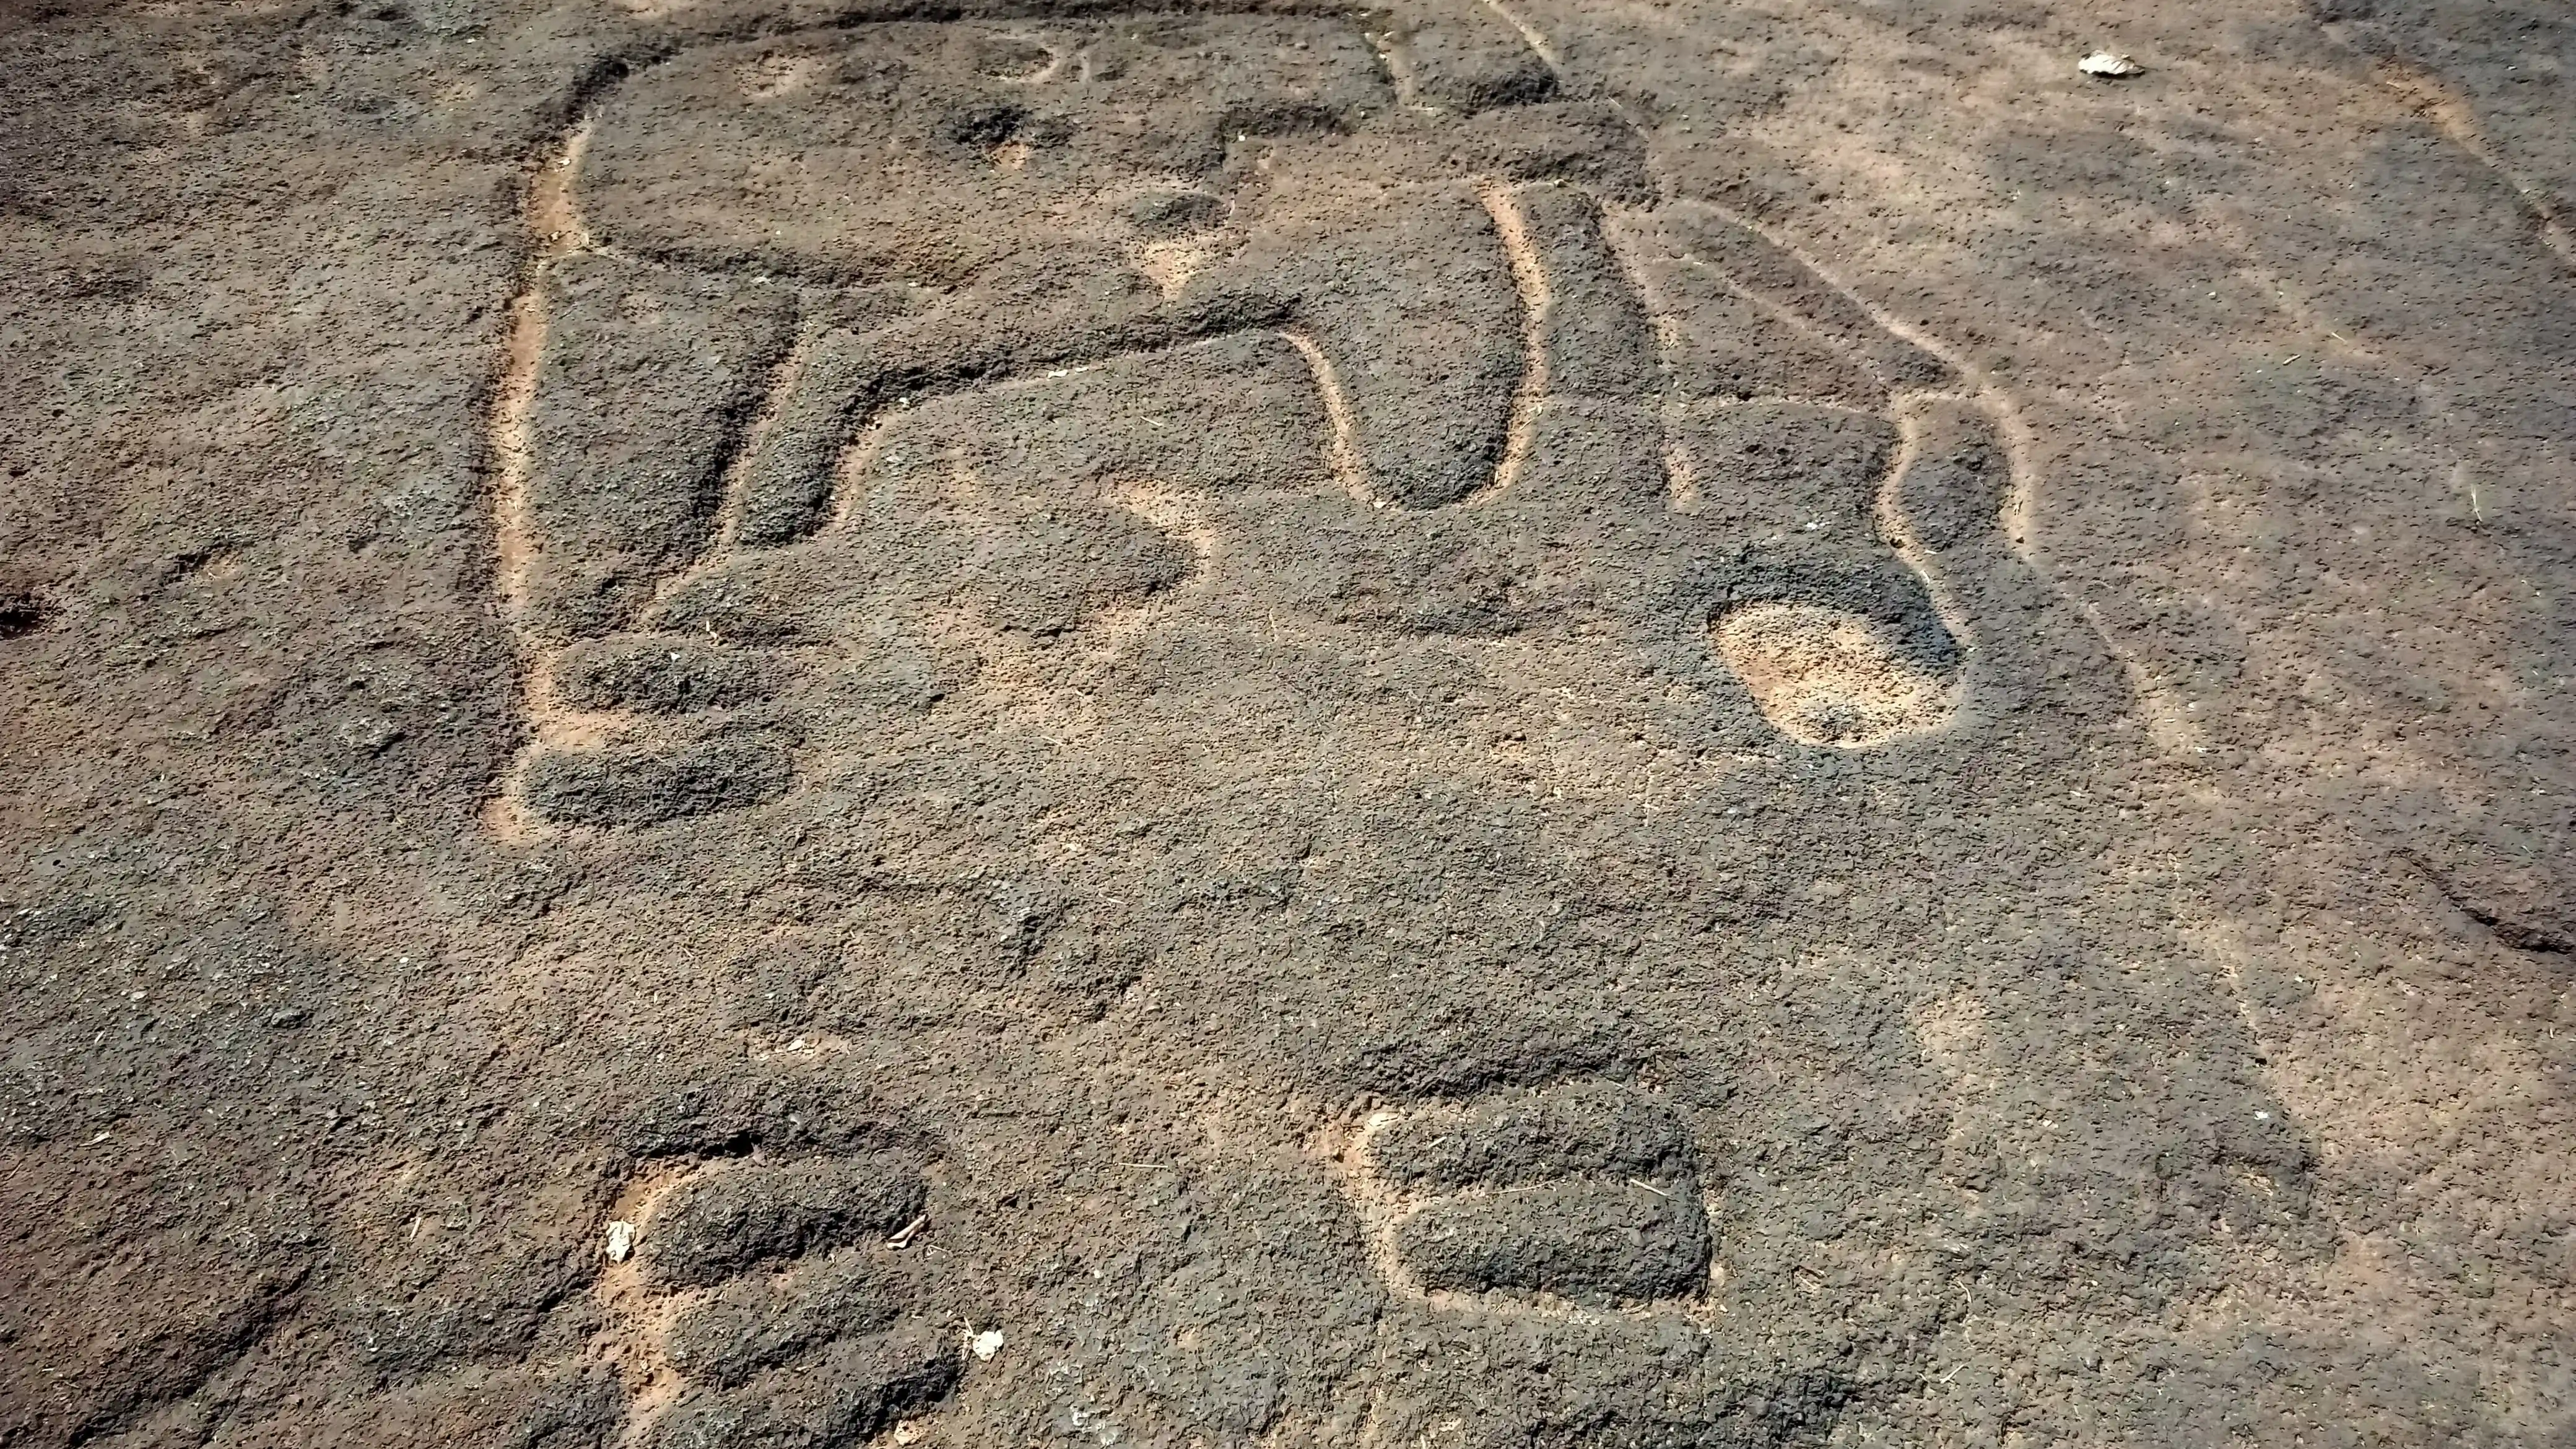 Prehistoric Rock Art Site